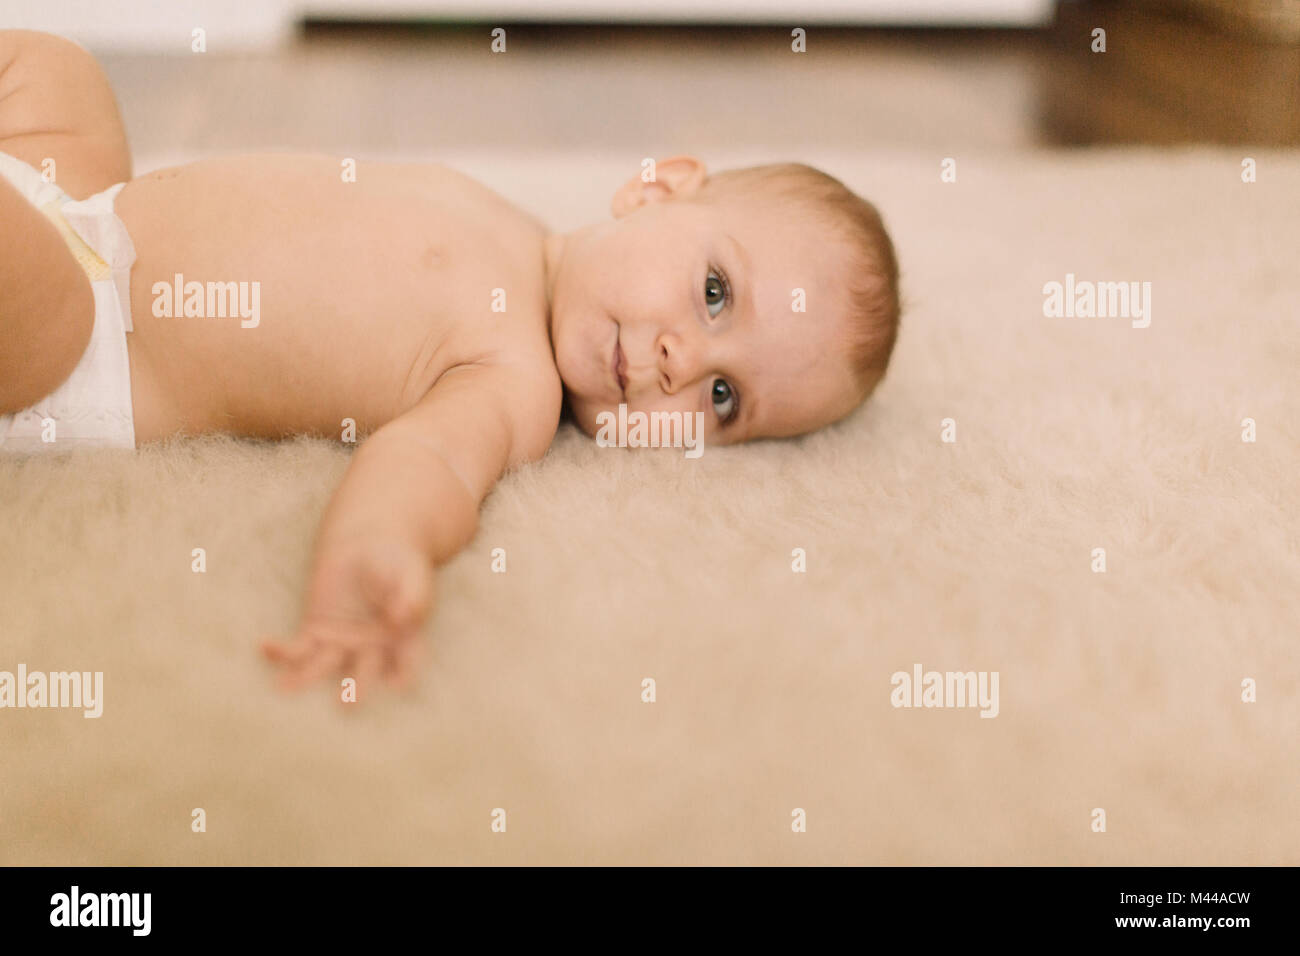 Ritratto di simpatici baby girl nel pannolino giacente sul tappeto beige Foto Stock